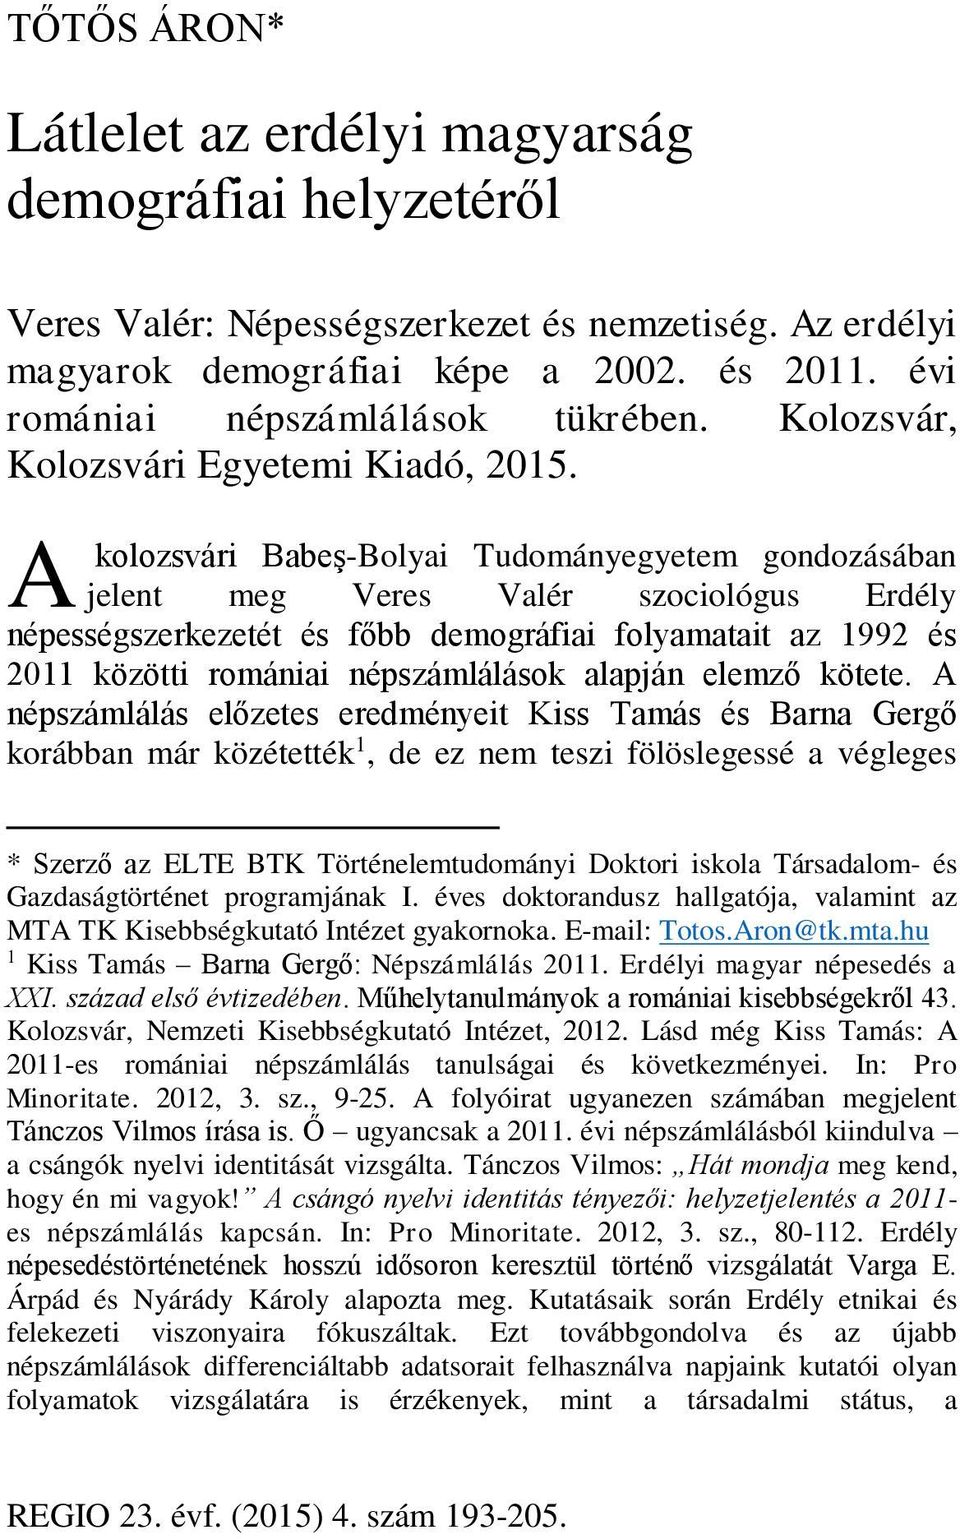 A kolozsvári Babeş-Bolyai Tudományegyetem gondozásában jelent meg Veres Valér szociológus Erdély népességszerkezetét és főbb demográfiai folyamatait az 1992 és 2011 közötti romániai népszámlálások